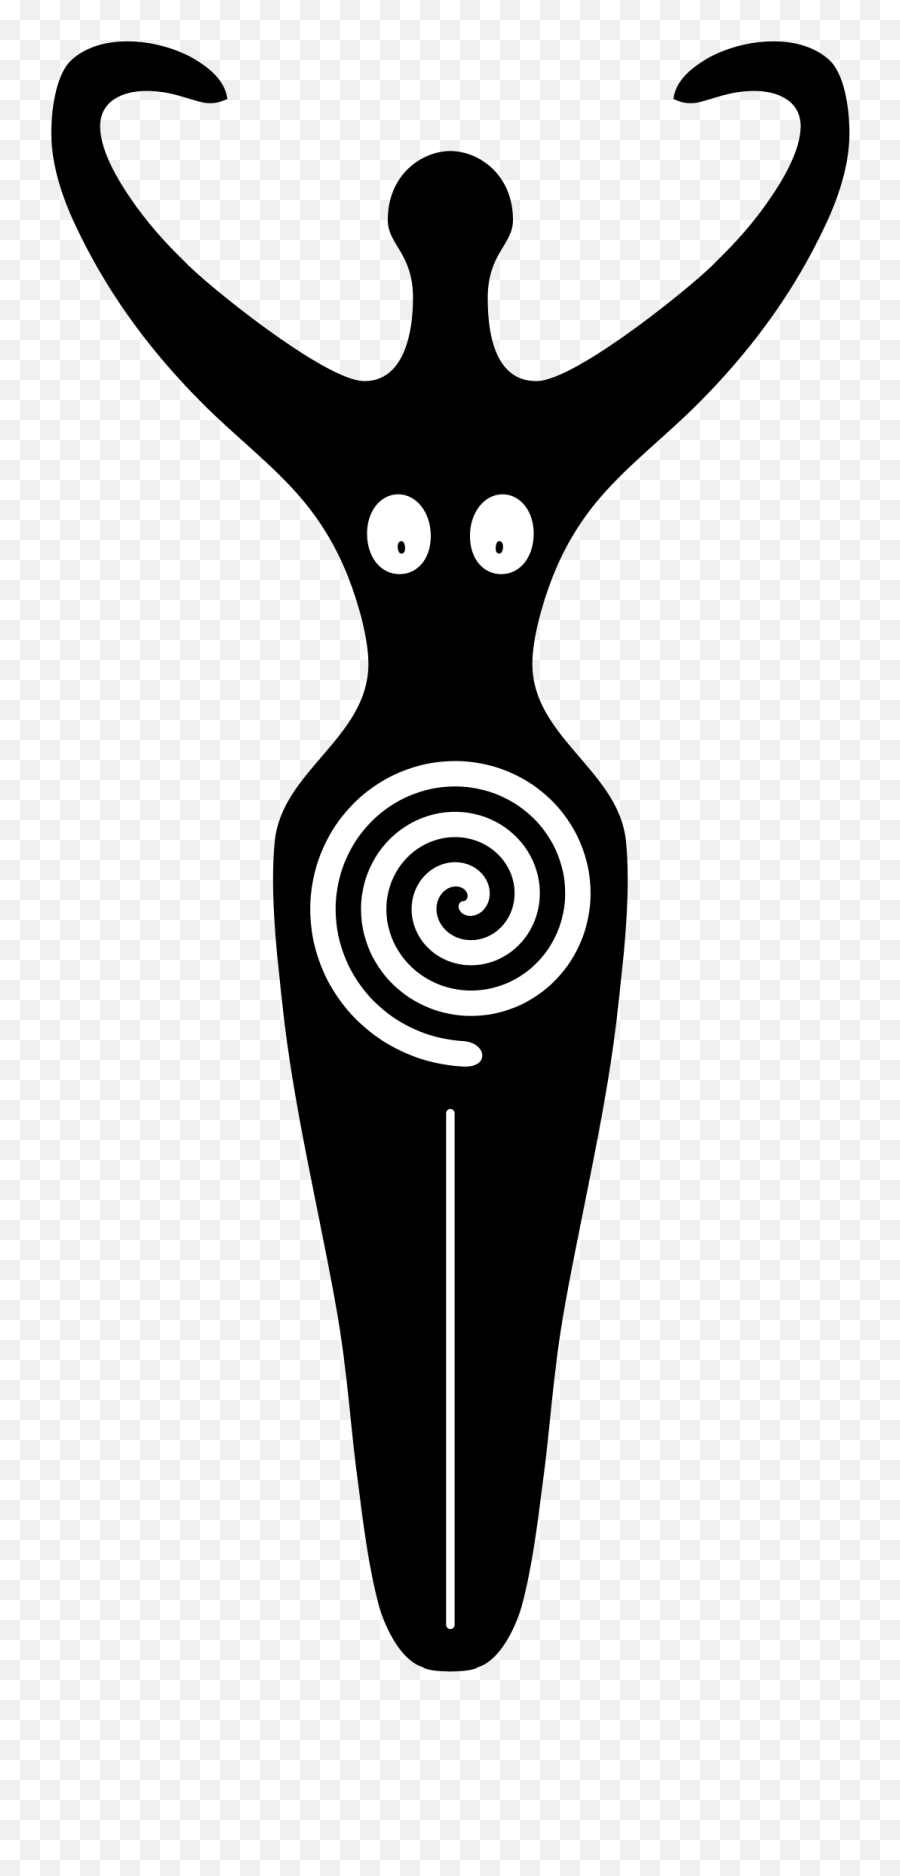 Spiral 20clipart - Goddess Movement Transparent Cartoon Spiral Goddess Emoji,Movement Clipart